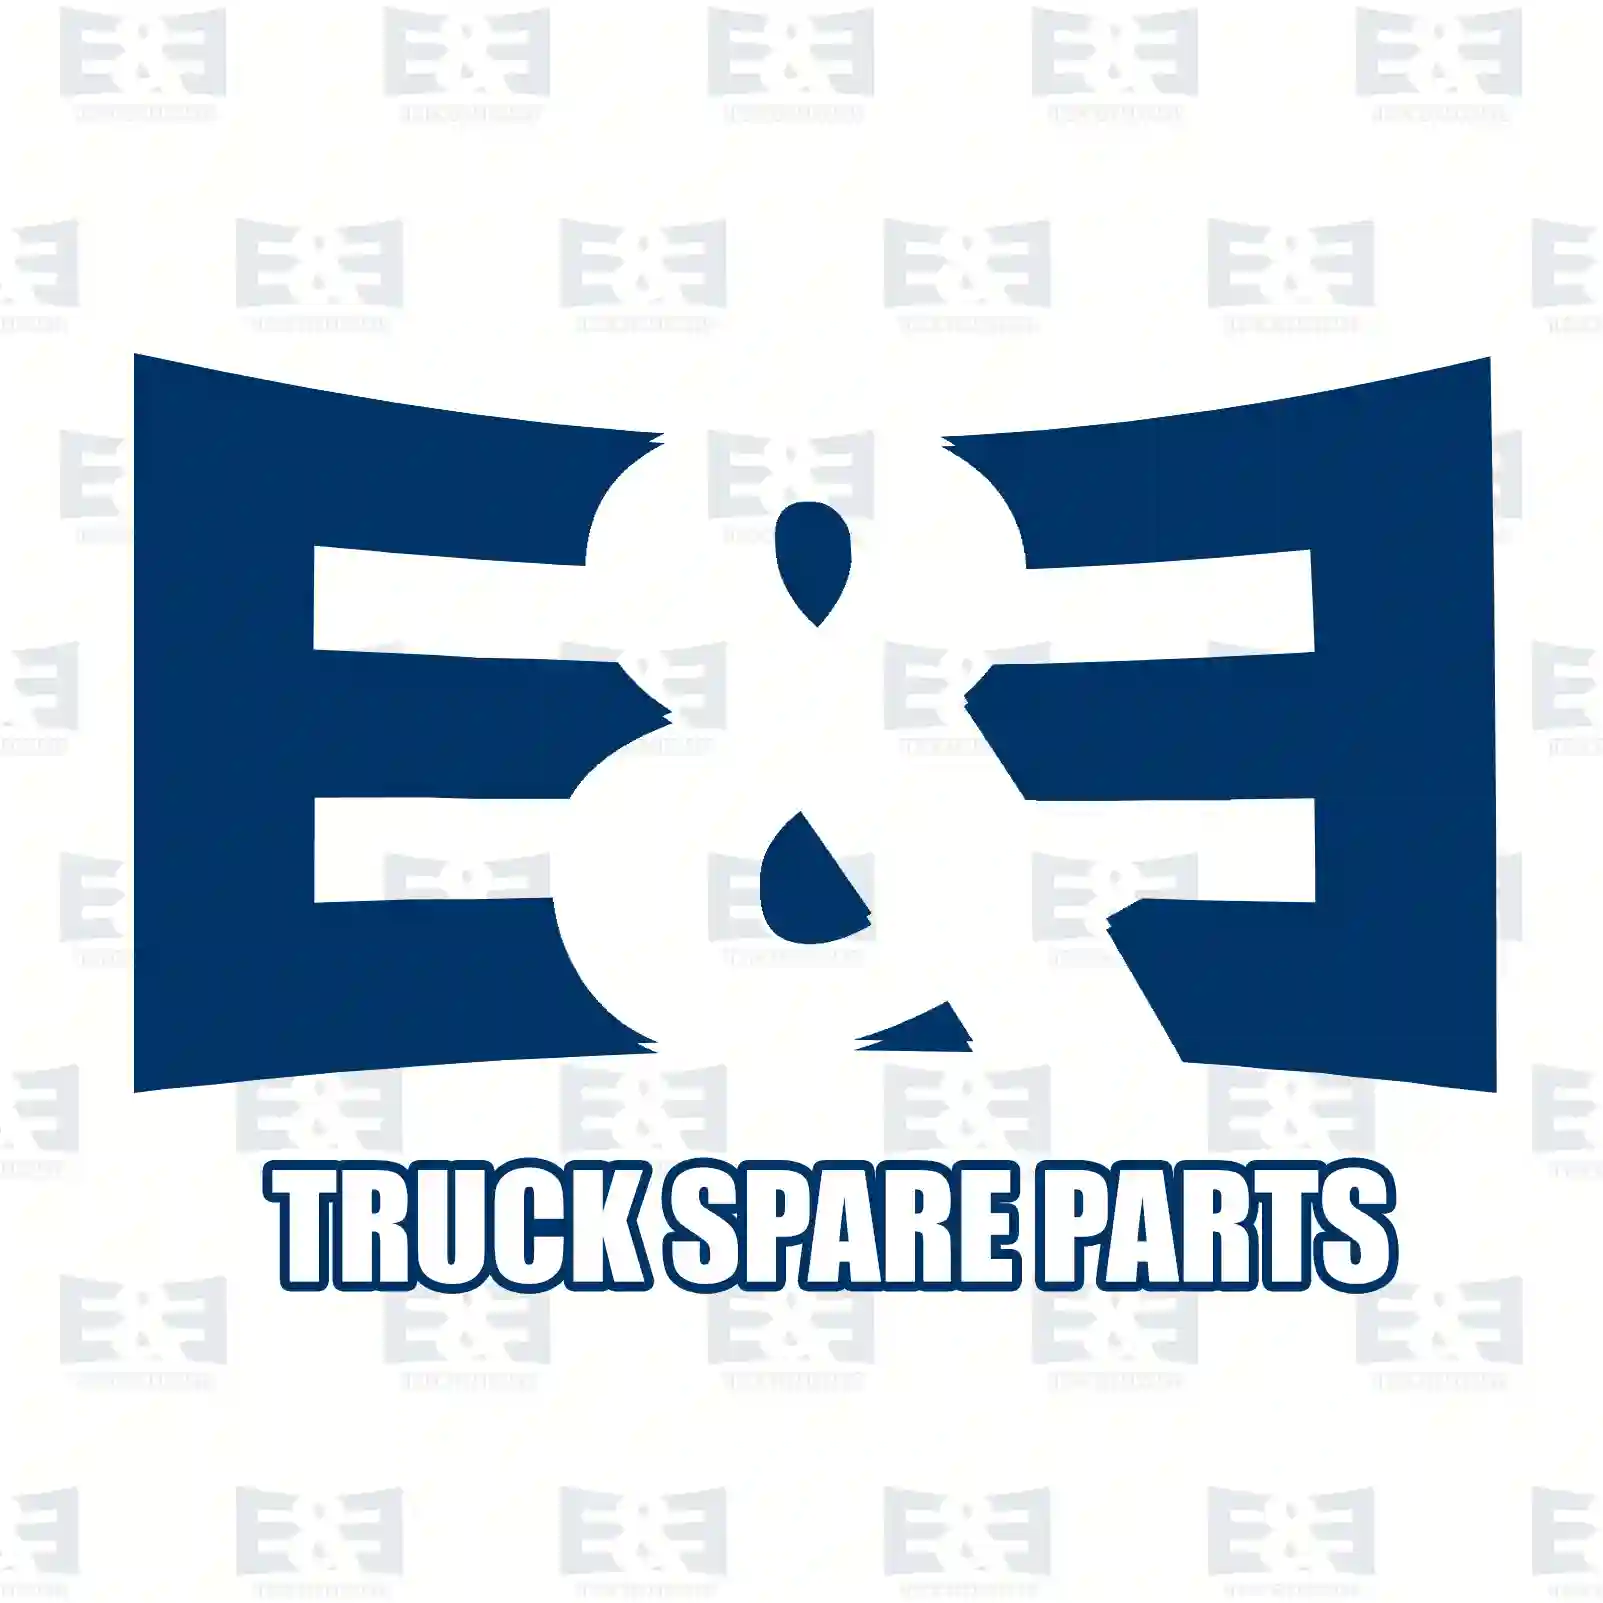 Ignition coil, 2E2297999, 504085566, 504085566, 504085566 ||  2E2297999 E&E Truck Spare Parts | Truck Spare Parts, Auotomotive Spare Parts Ignition coil, 2E2297999, 504085566, 504085566, 504085566 ||  2E2297999 E&E Truck Spare Parts | Truck Spare Parts, Auotomotive Spare Parts